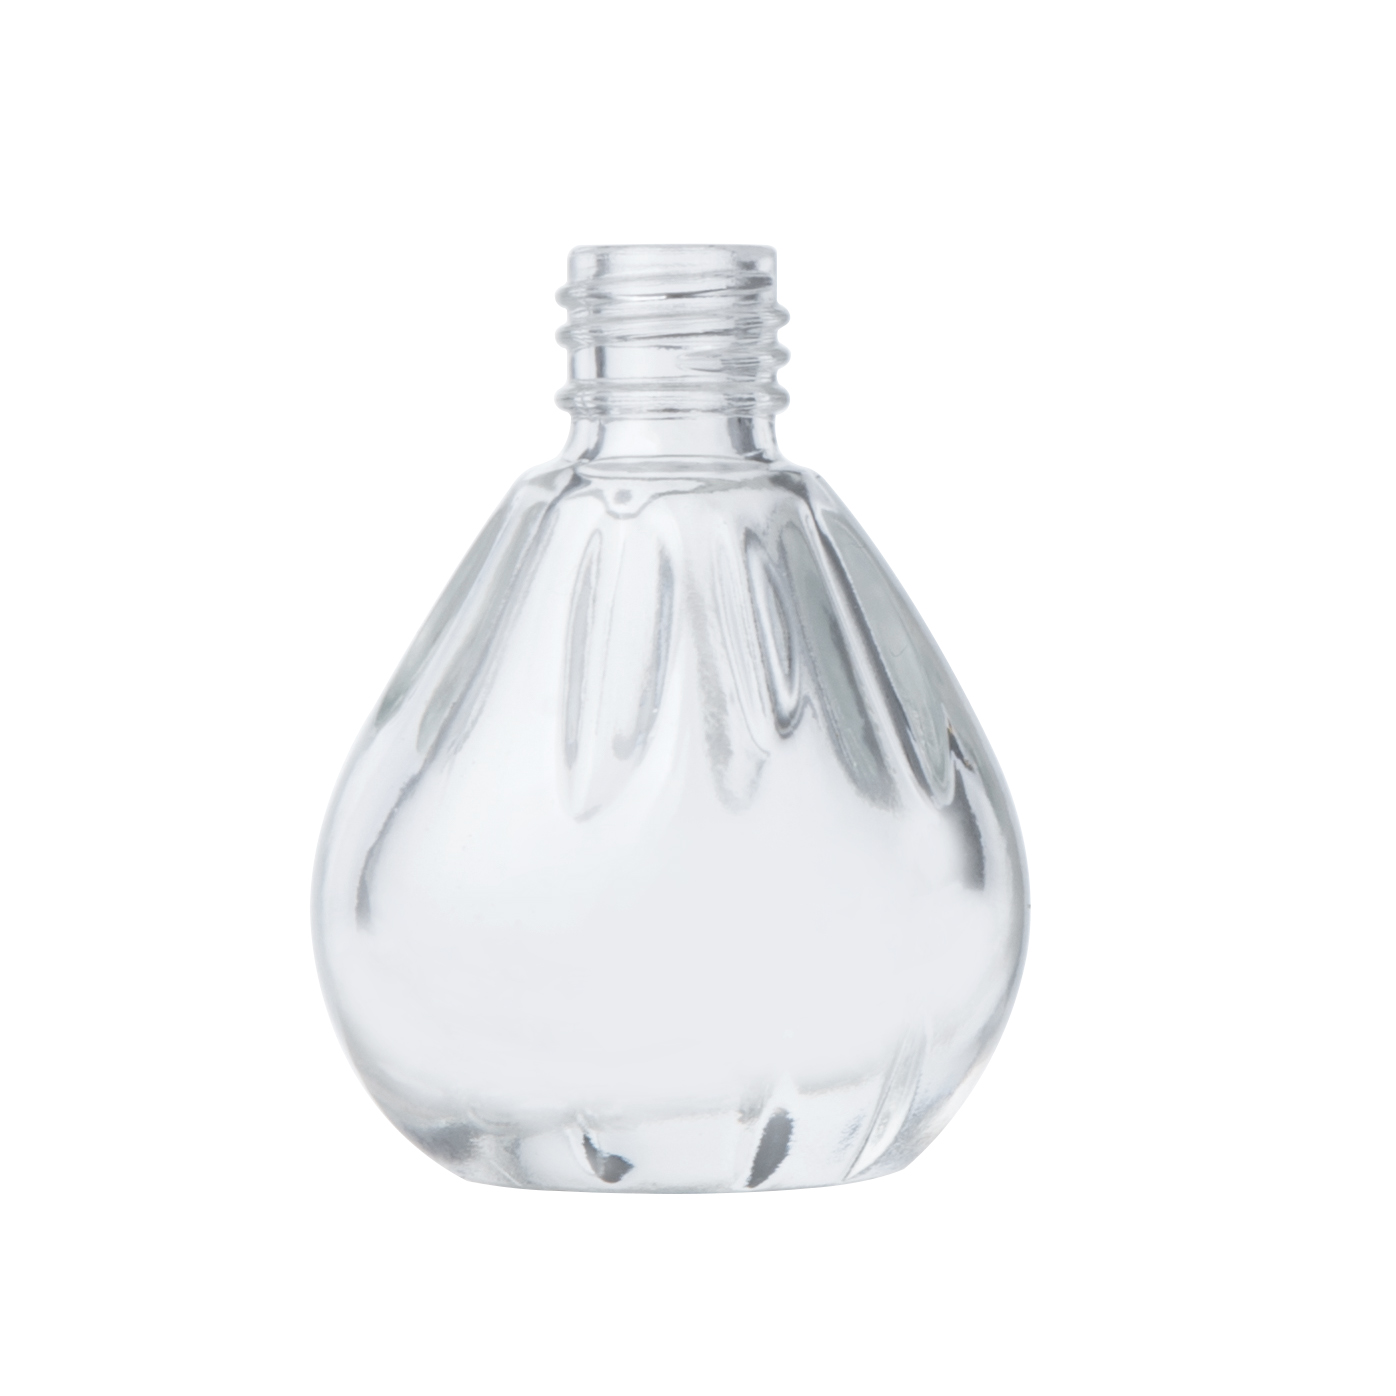 8ml Unique Nail Polish Glass Bottle with Crown Cap